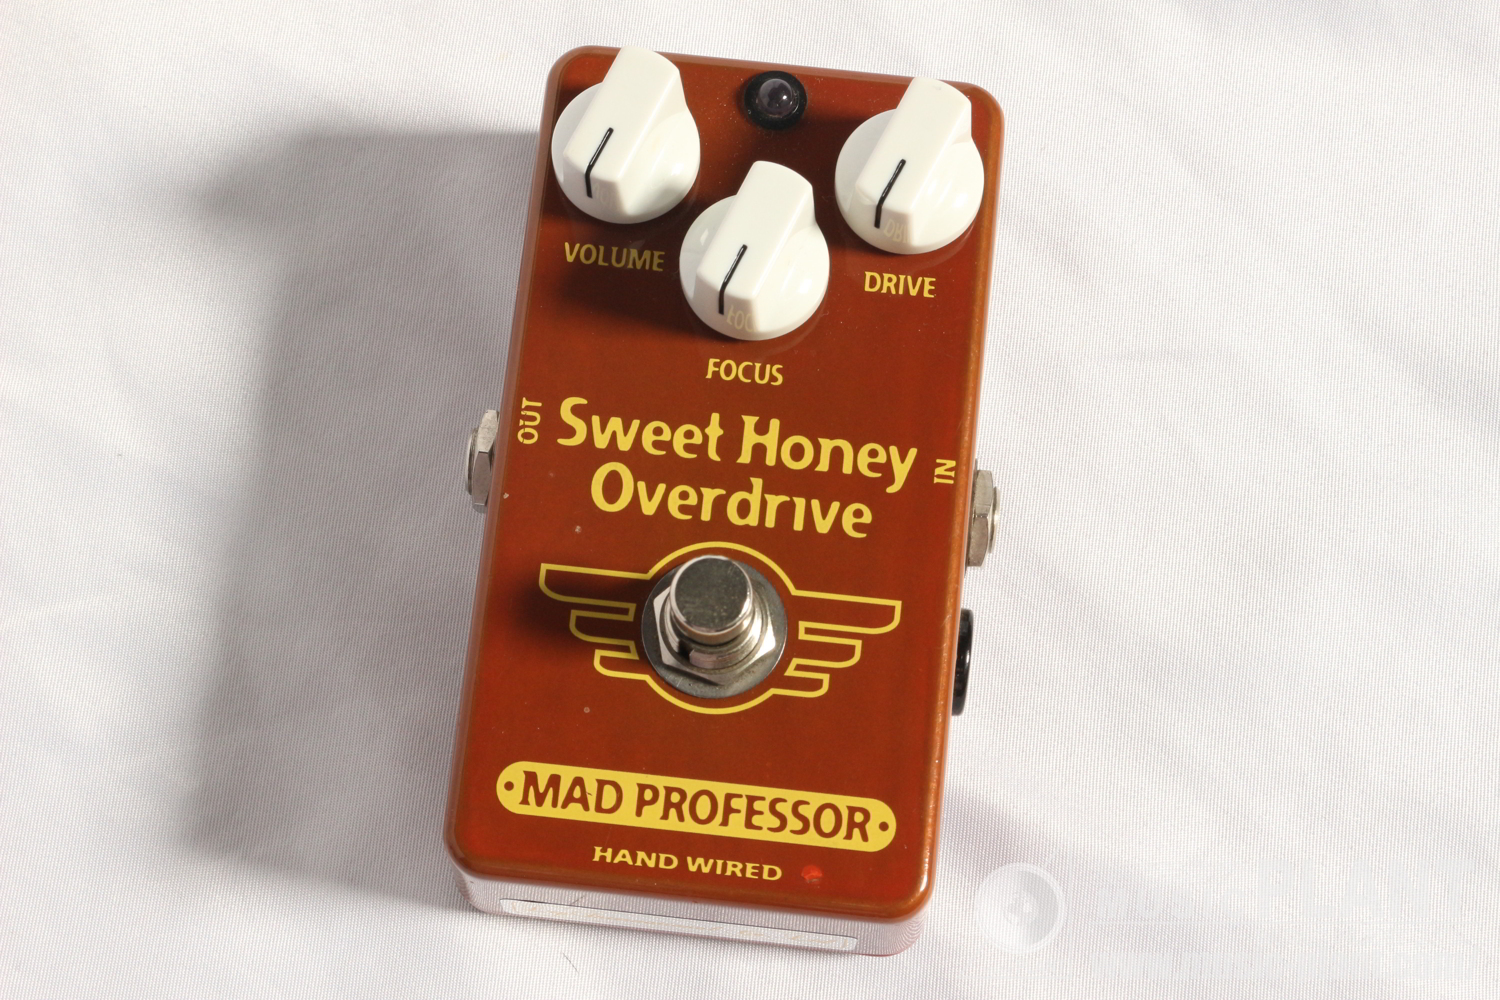 Mad Professor Hand Wiredシリーズ オーバードライブSweet Honey Overdrive HW中古品()売却済みです。あしからずご了承ください。  MUSIC PLANT WEBSHOP